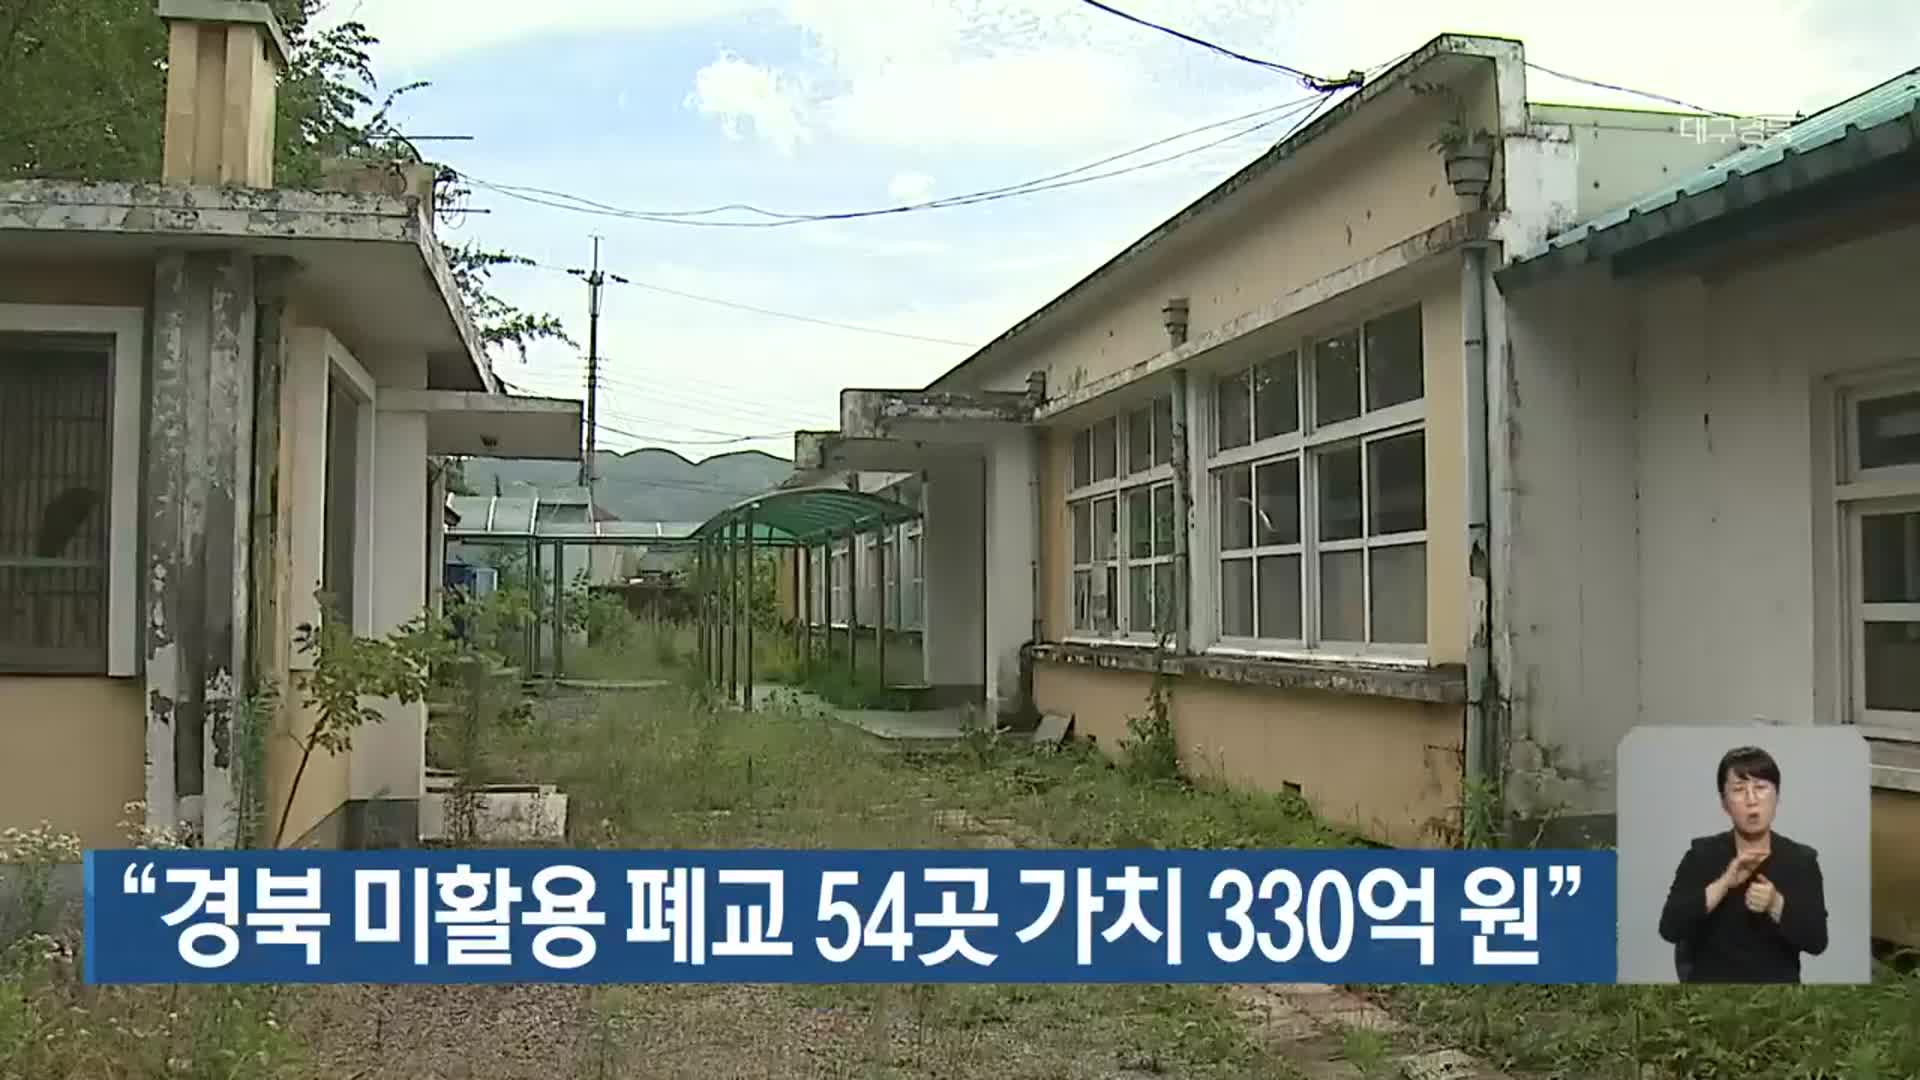 “경북 미활용 폐교 54곳 가치 330억 원”